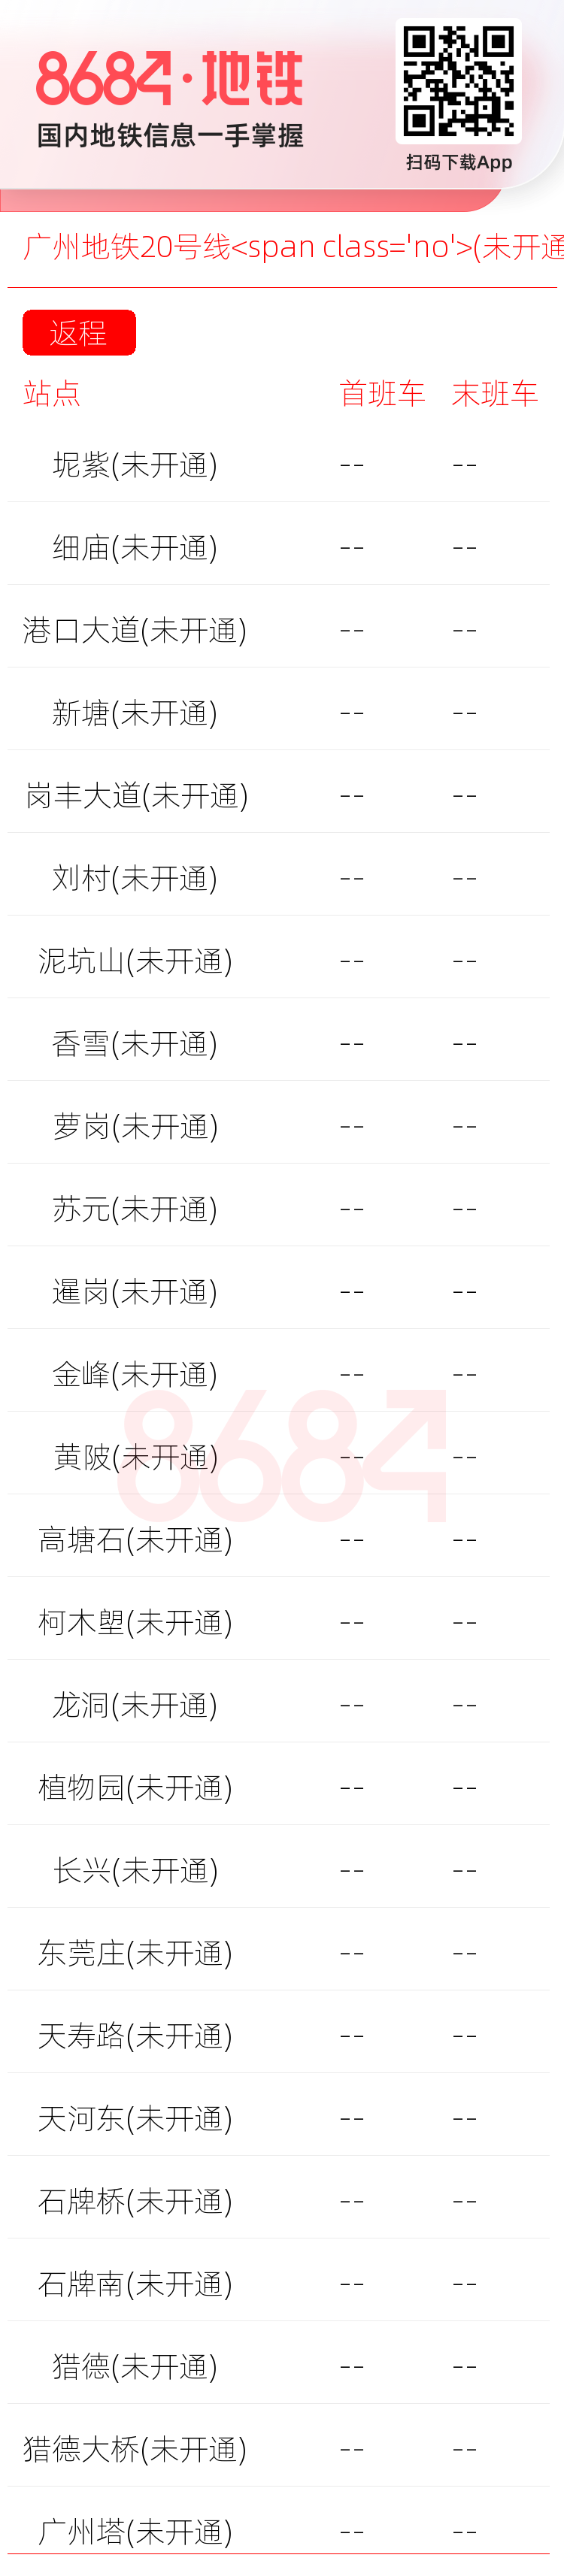 广州地铁20号线<span class='no'>(未开通)</span>运营时间表